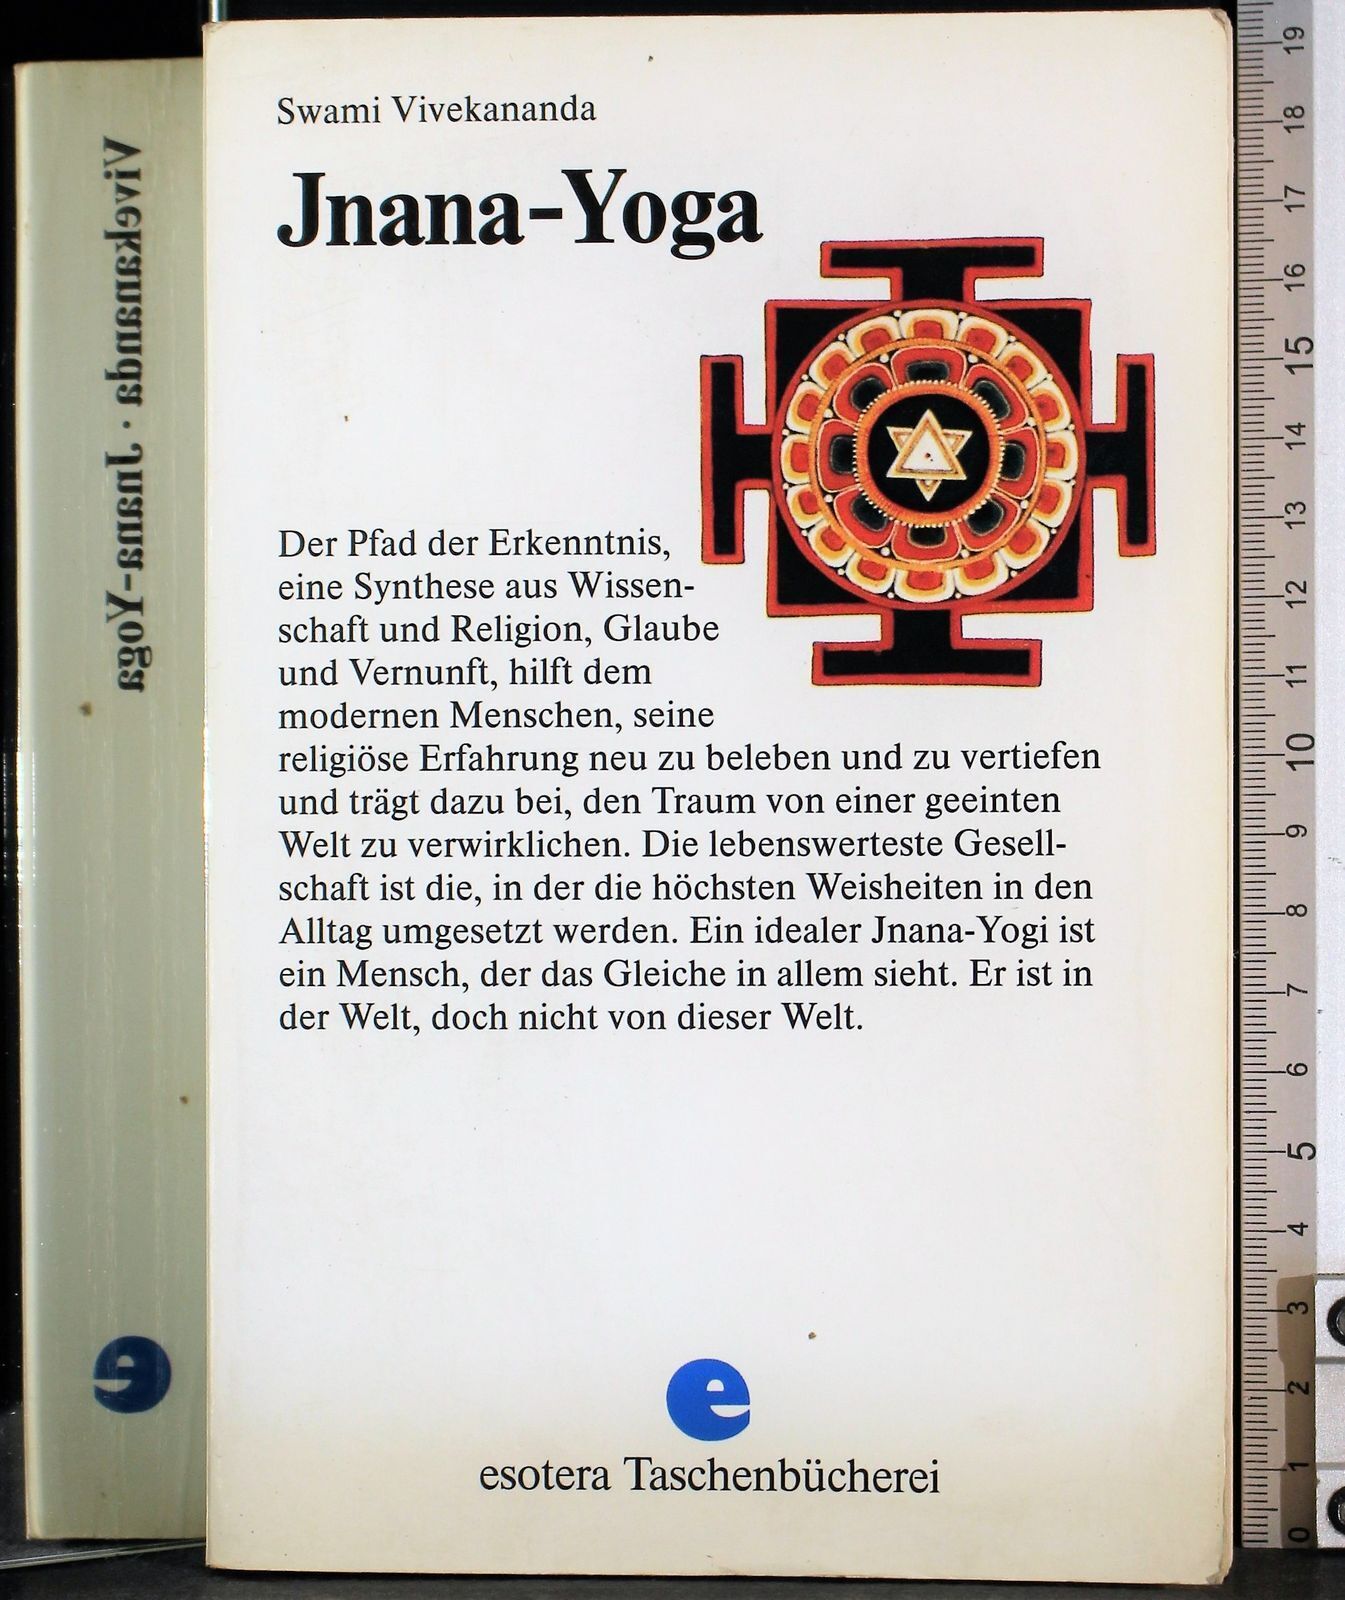 Jnana-Yoga: Der Pfad der Erkenntnis. Erster und Zweiter Teil - Swami Vivekananda